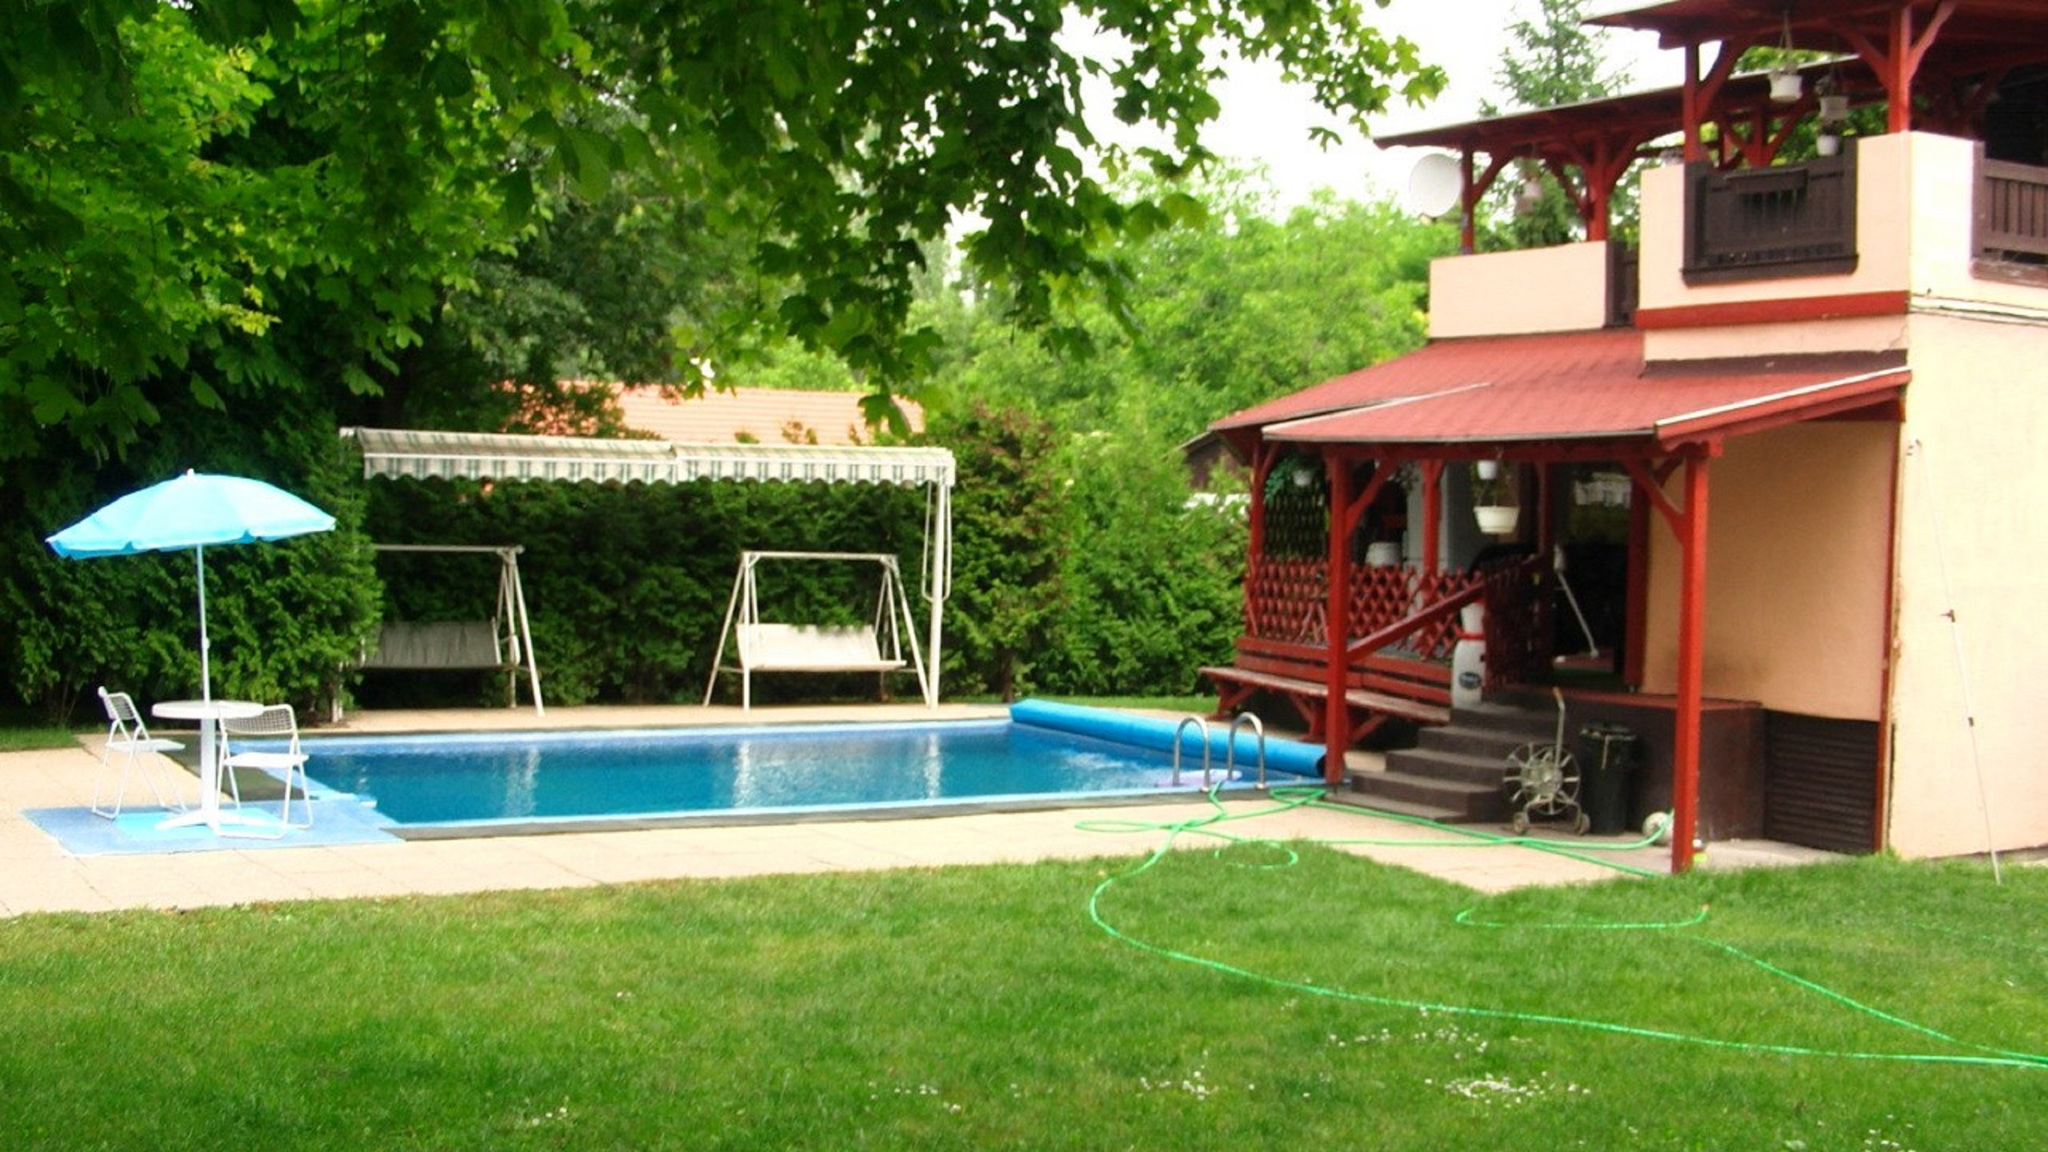 Ferienhaus mit Pool, WLAN und Kliaamlage